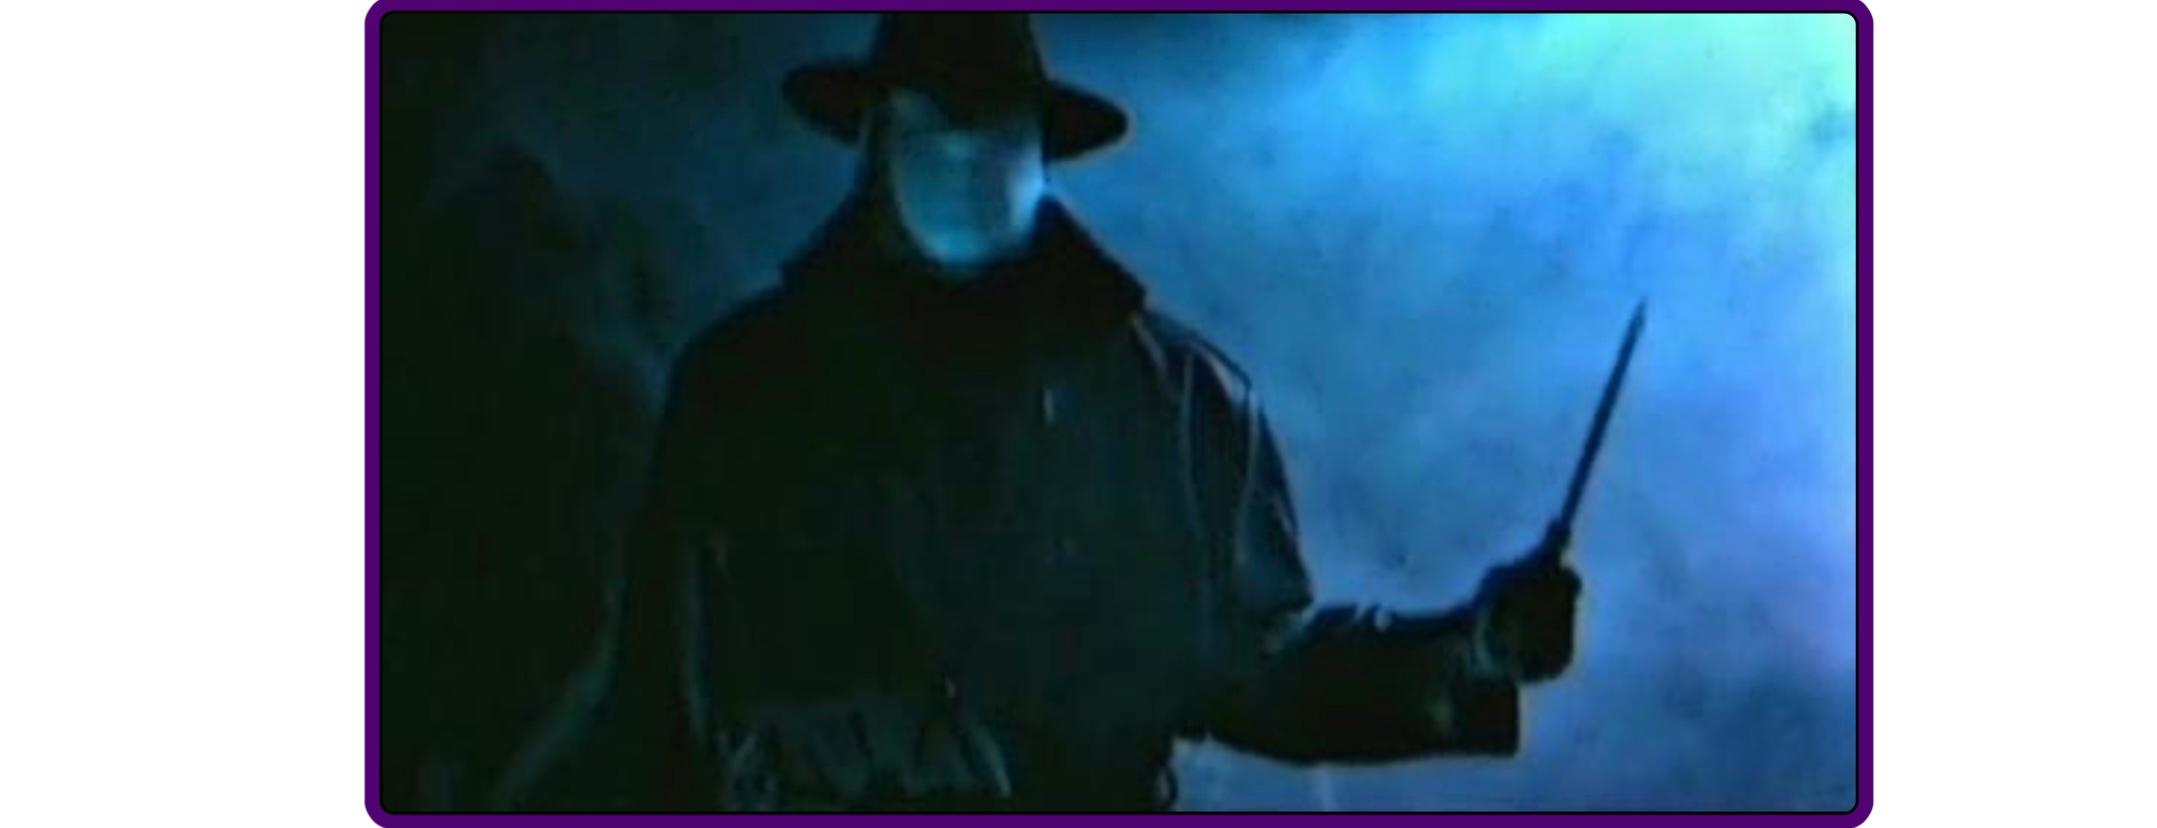 Fantom kiler (1998) Screenshot 3